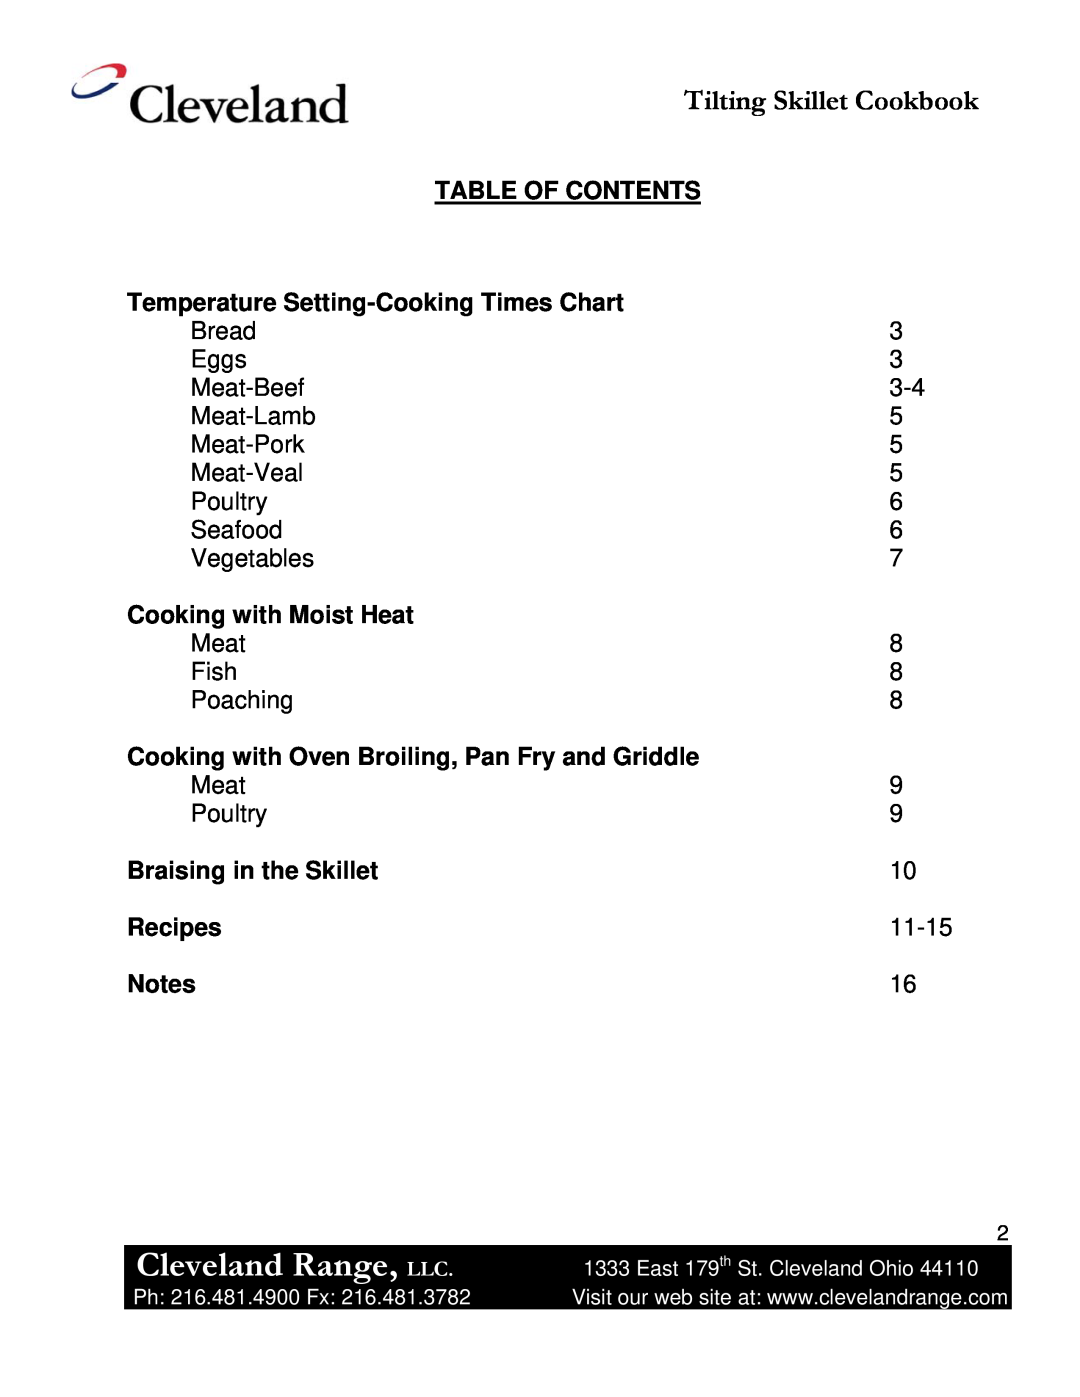 Cleveland Range Skillet/Braising manual Cleveland Range, LLC, Tilting Skillet Cookbook, Table Of Contents, Recipes 